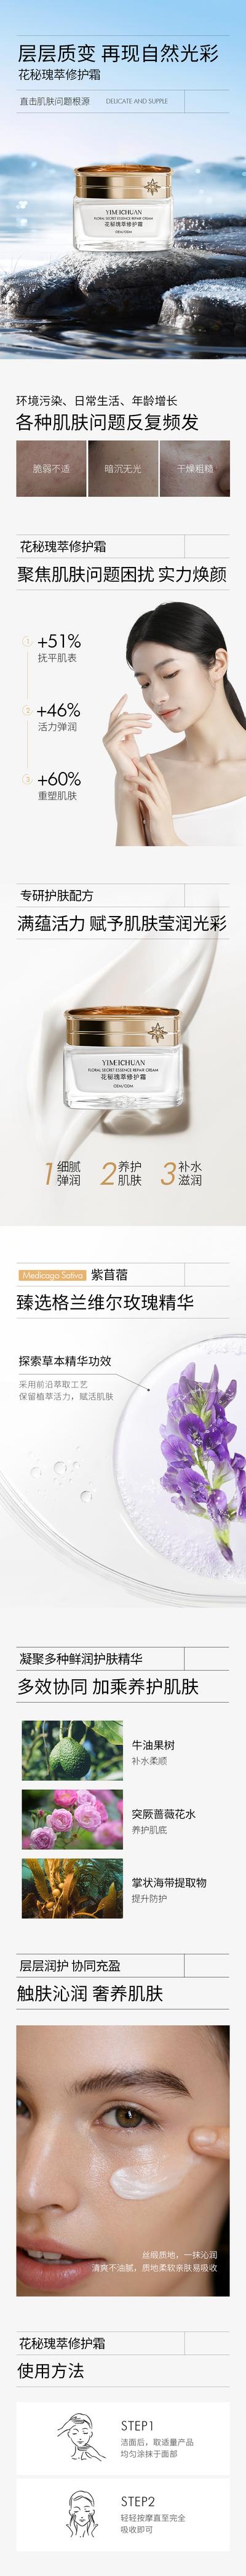 南门网 广告 海报 电商 面霜 美白 化妆品 保养品 详情页